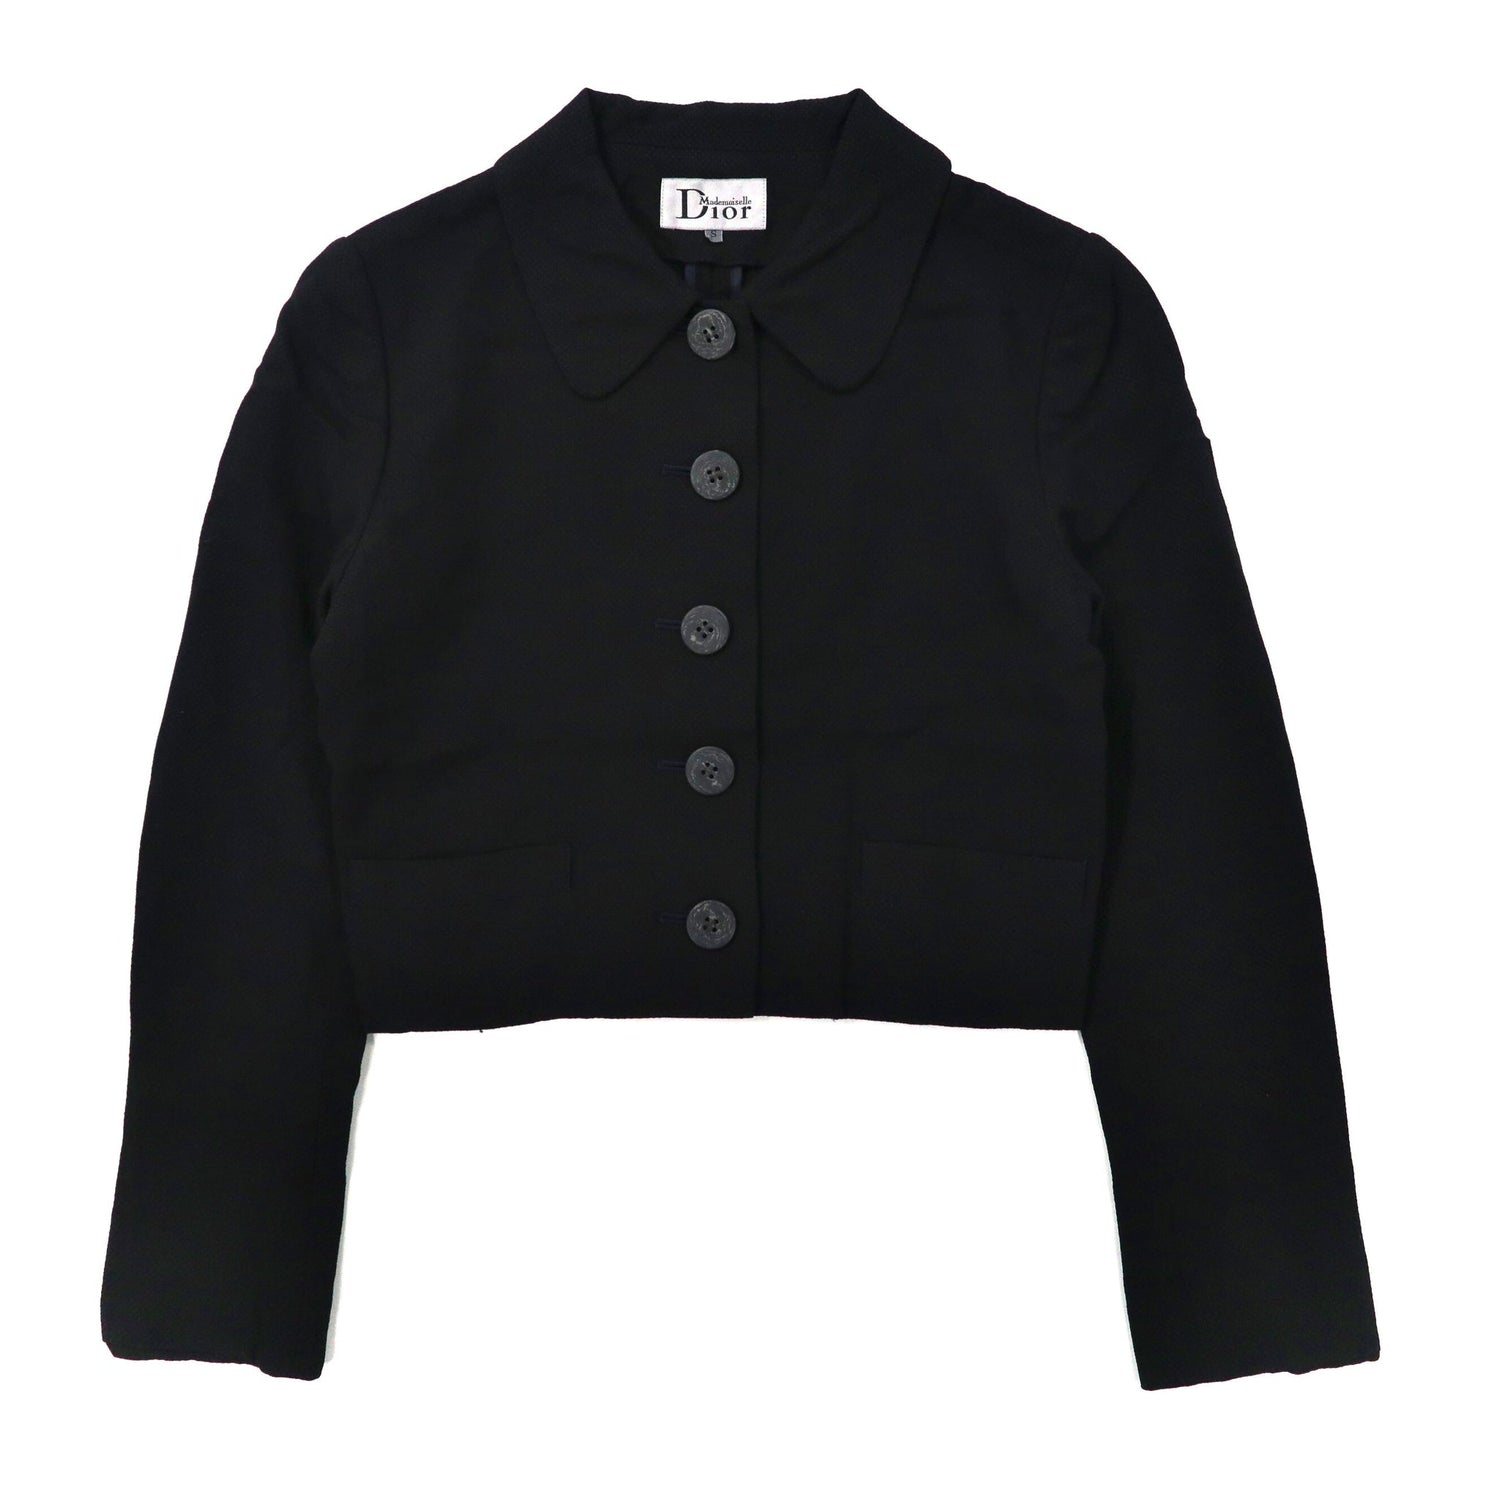 Christian Dior ボックスシルエット デザインジャケット S ブラック レーヨン Mademoiselle 70年代-Christian Dior-古着